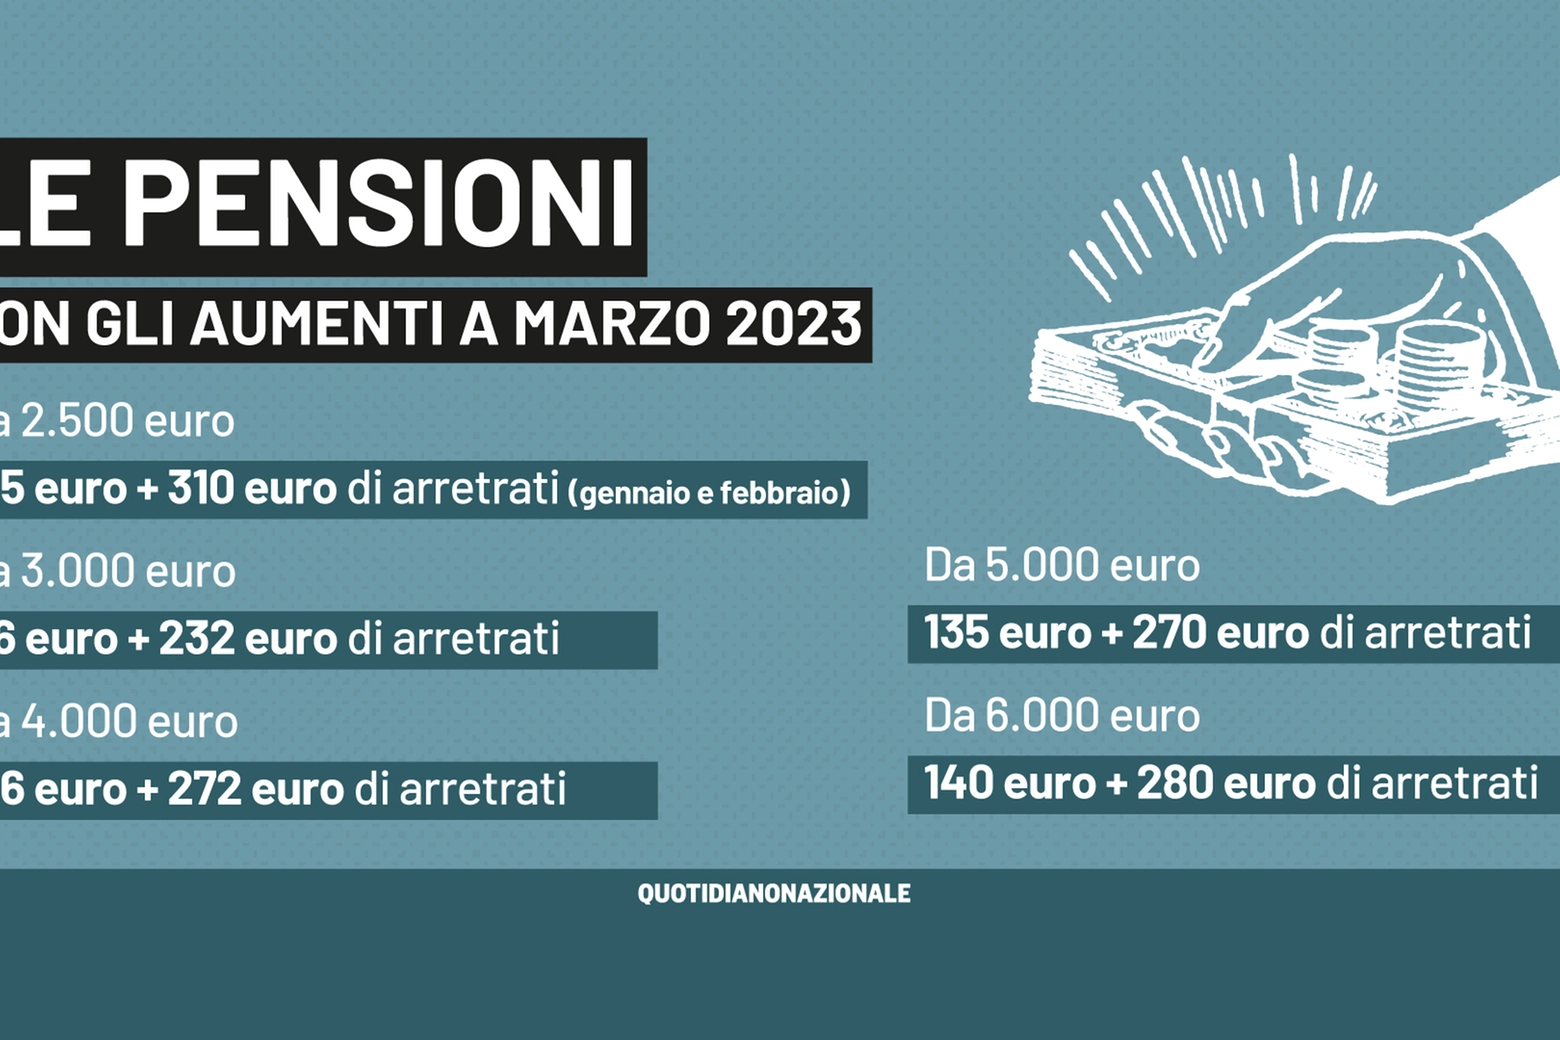 Gli aumenti delle pensioni superiori a 2.101,52 euro